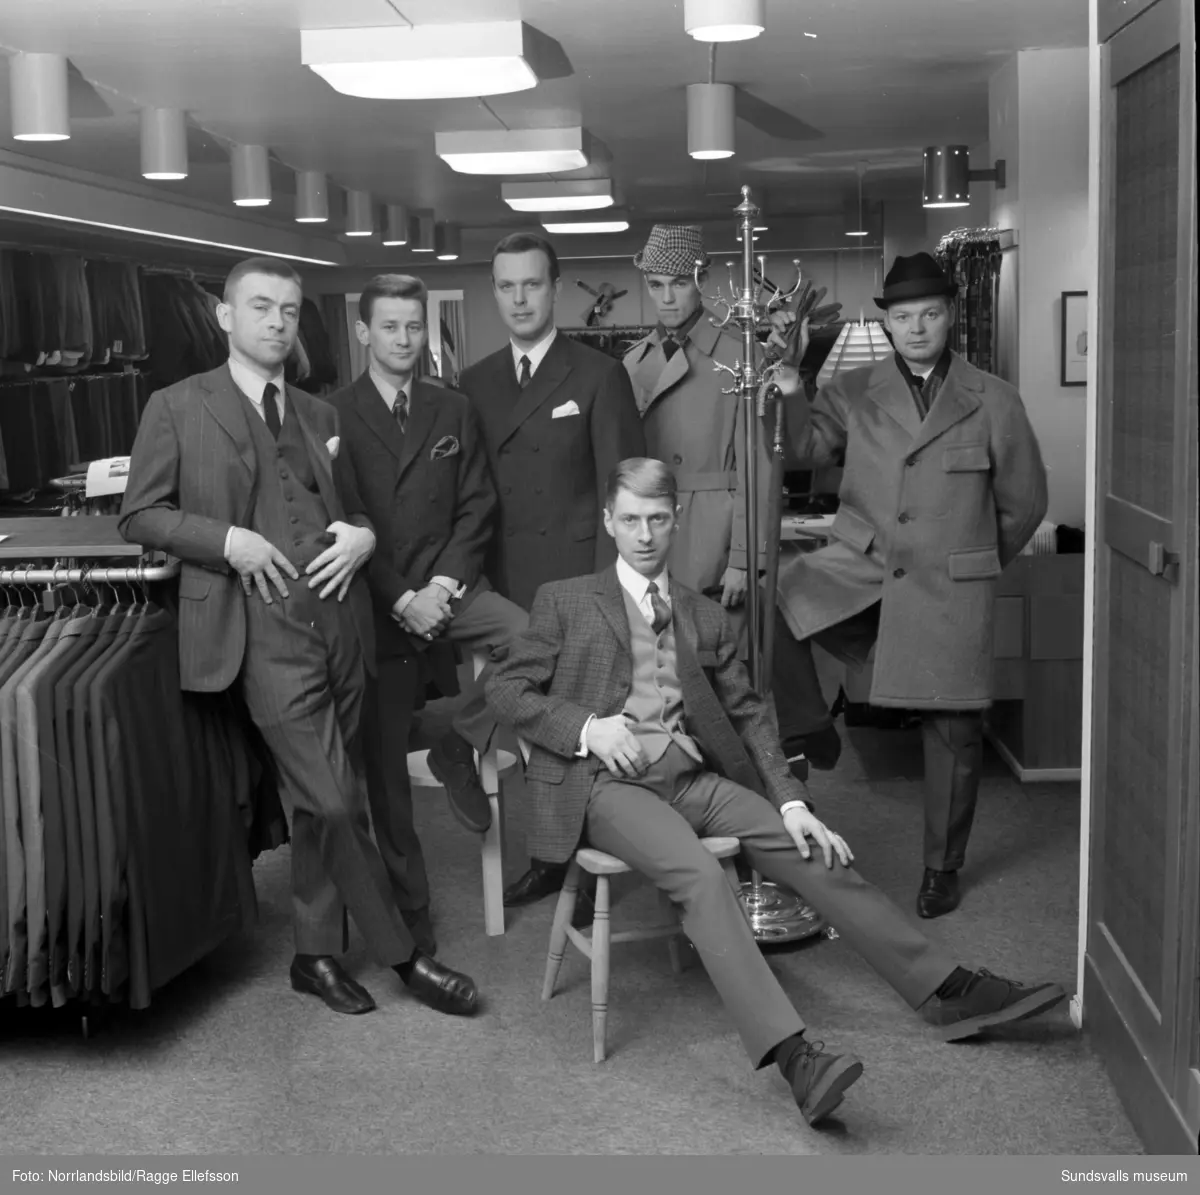 Manliga mannekänger visar kläder inne på Henrix herrekipering för annonsfotografering.